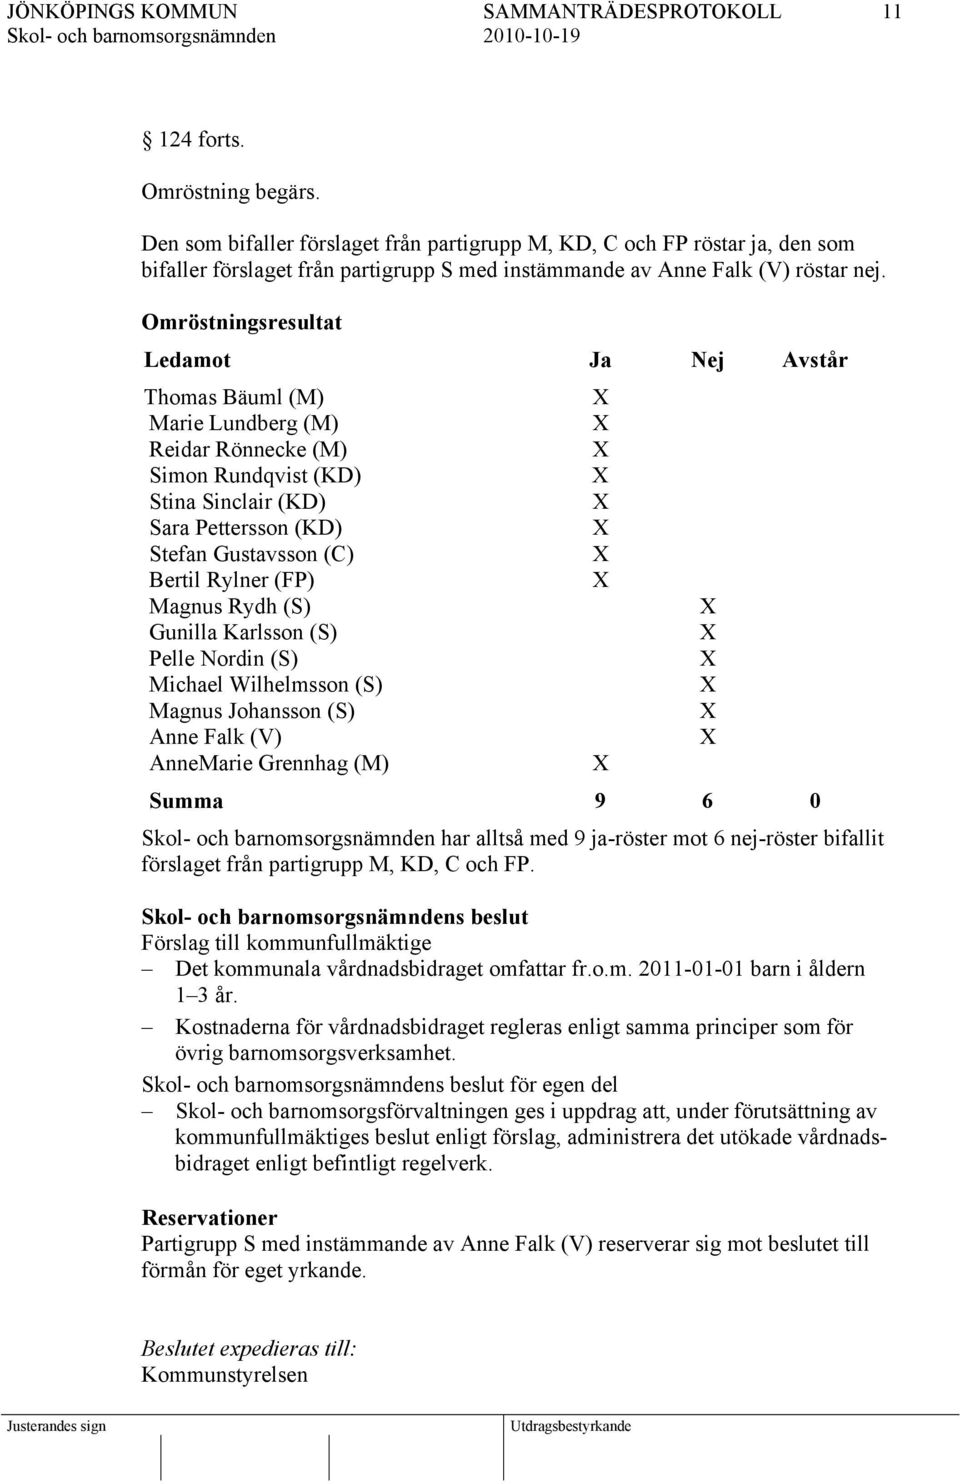 (FP) Magnus Rydh (S) Gunilla Karlsson (S) Pelle Nordin (S) Michael Wilhelmsson (S) Magnus Johansson (S) Anne Falk (V) AnneMarie Grennhag (M) Summa 9 6 0 har alltså med 9 ja-röster mot 6 nej-röster